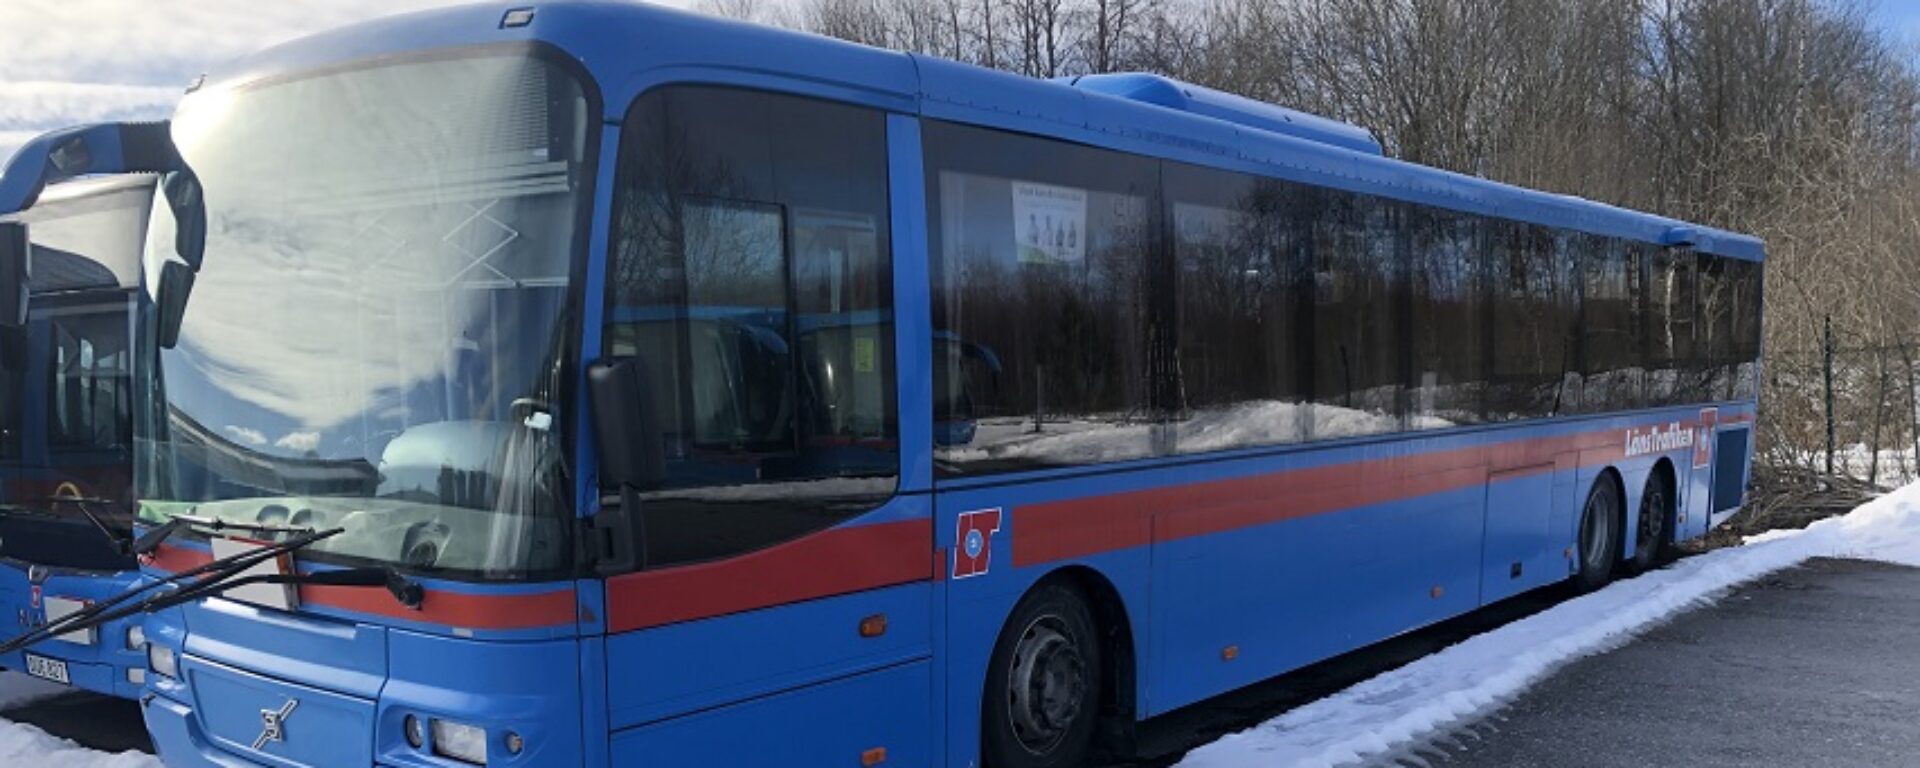 Transdev Sweden blue buses to Ukraine